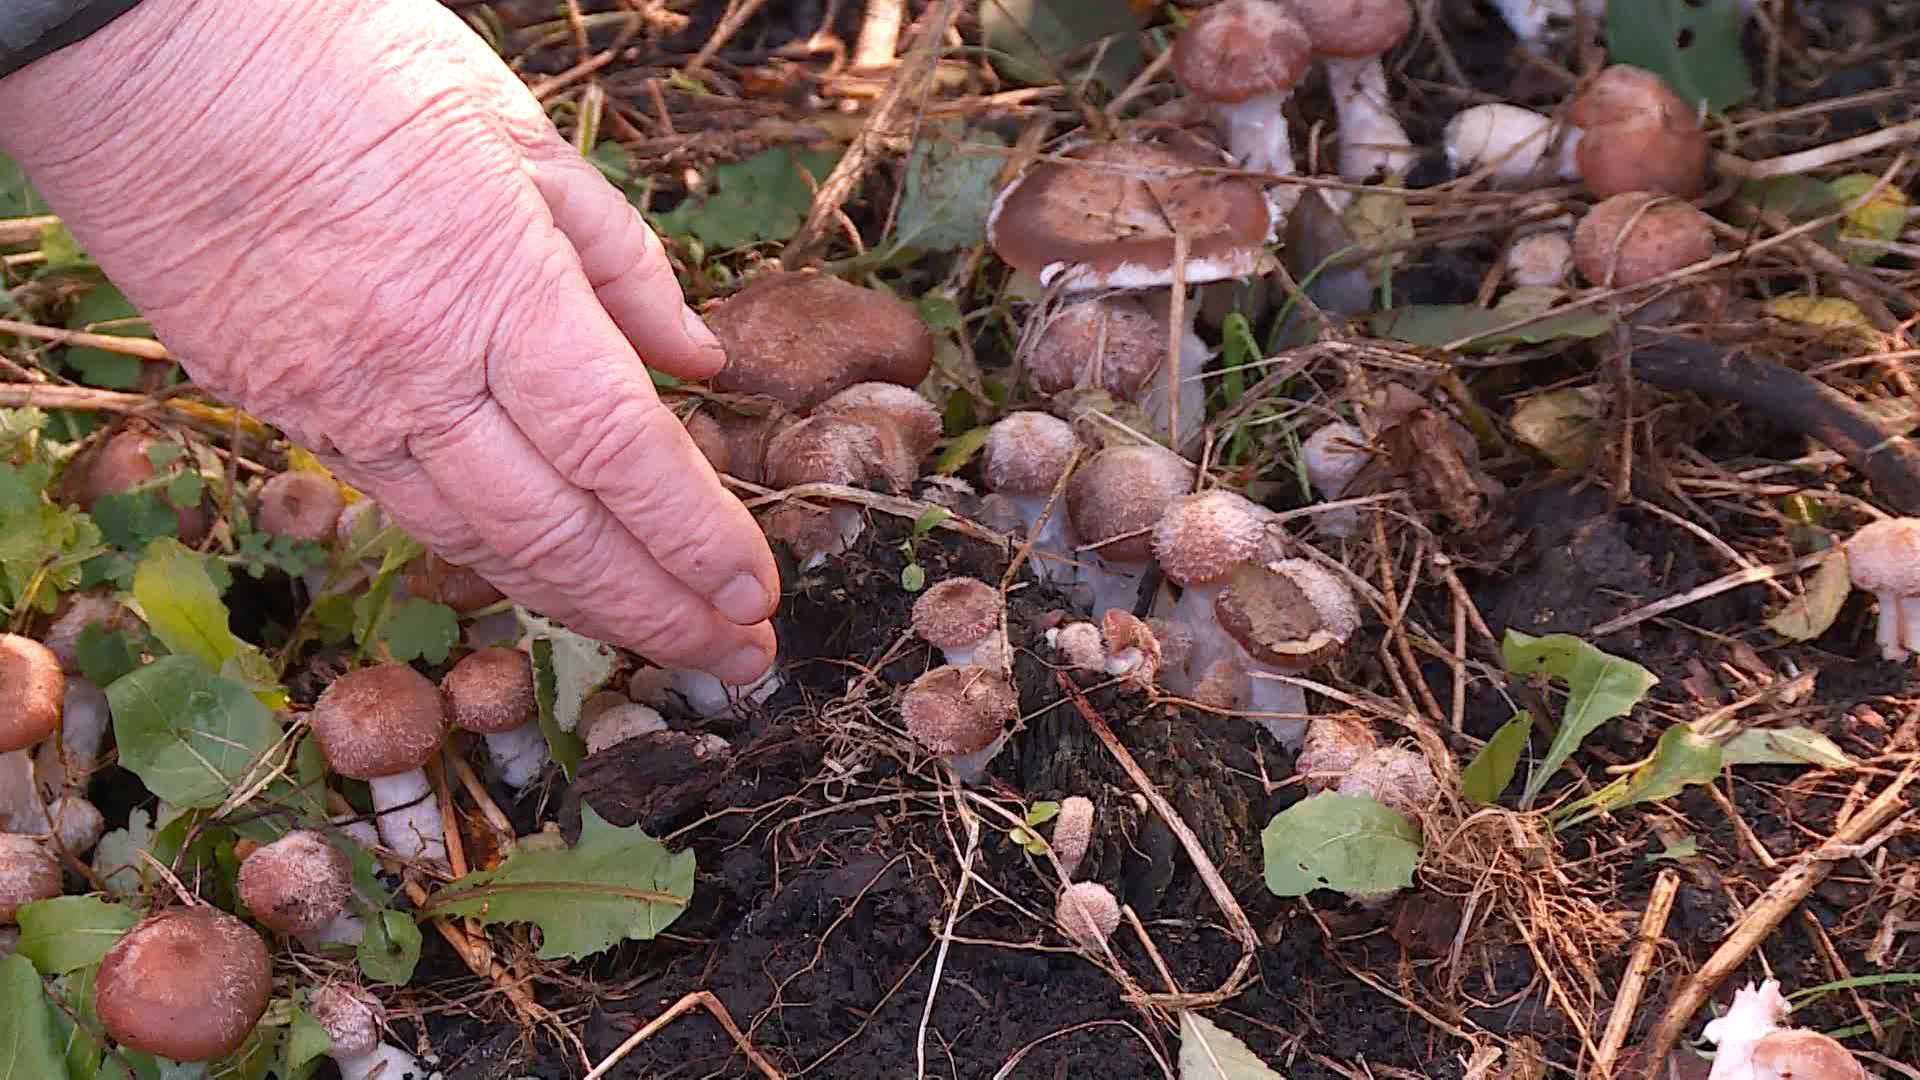 Выращивание белых грибов на приусадебном участке.